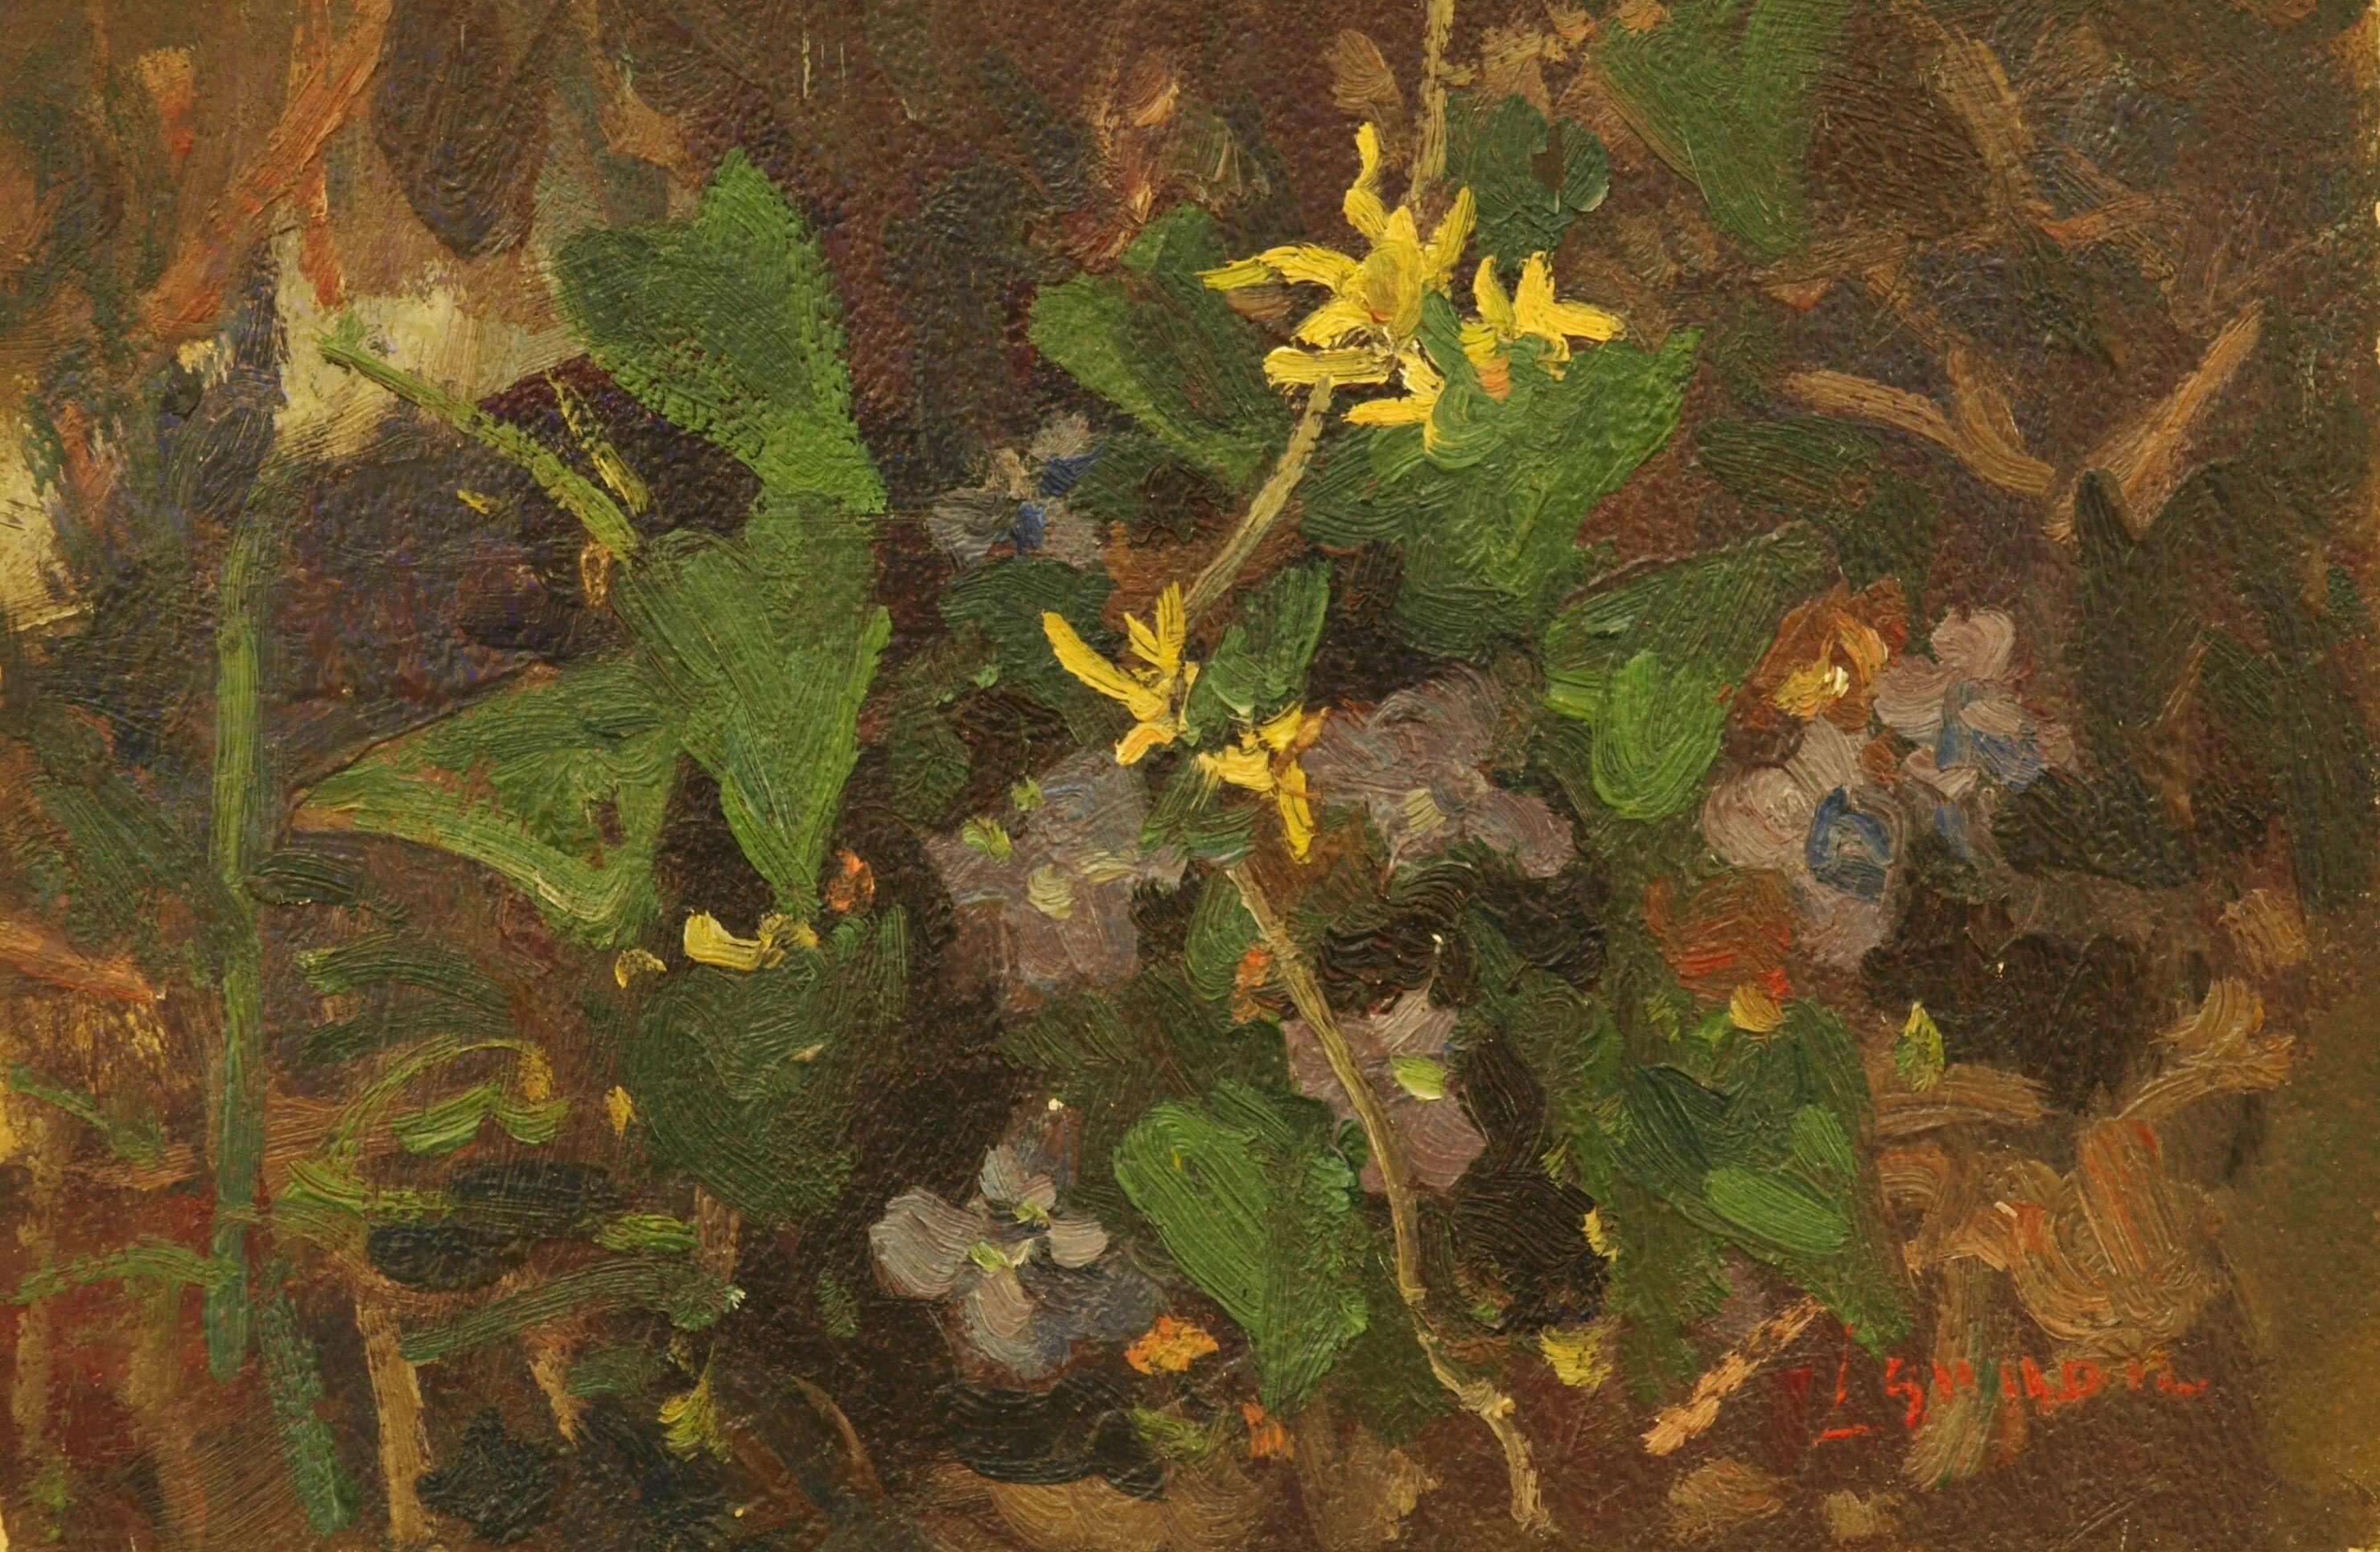 Flowering Vine, Oil on Panel, 8 x 12 Inches, by Bernard Lennon, $200